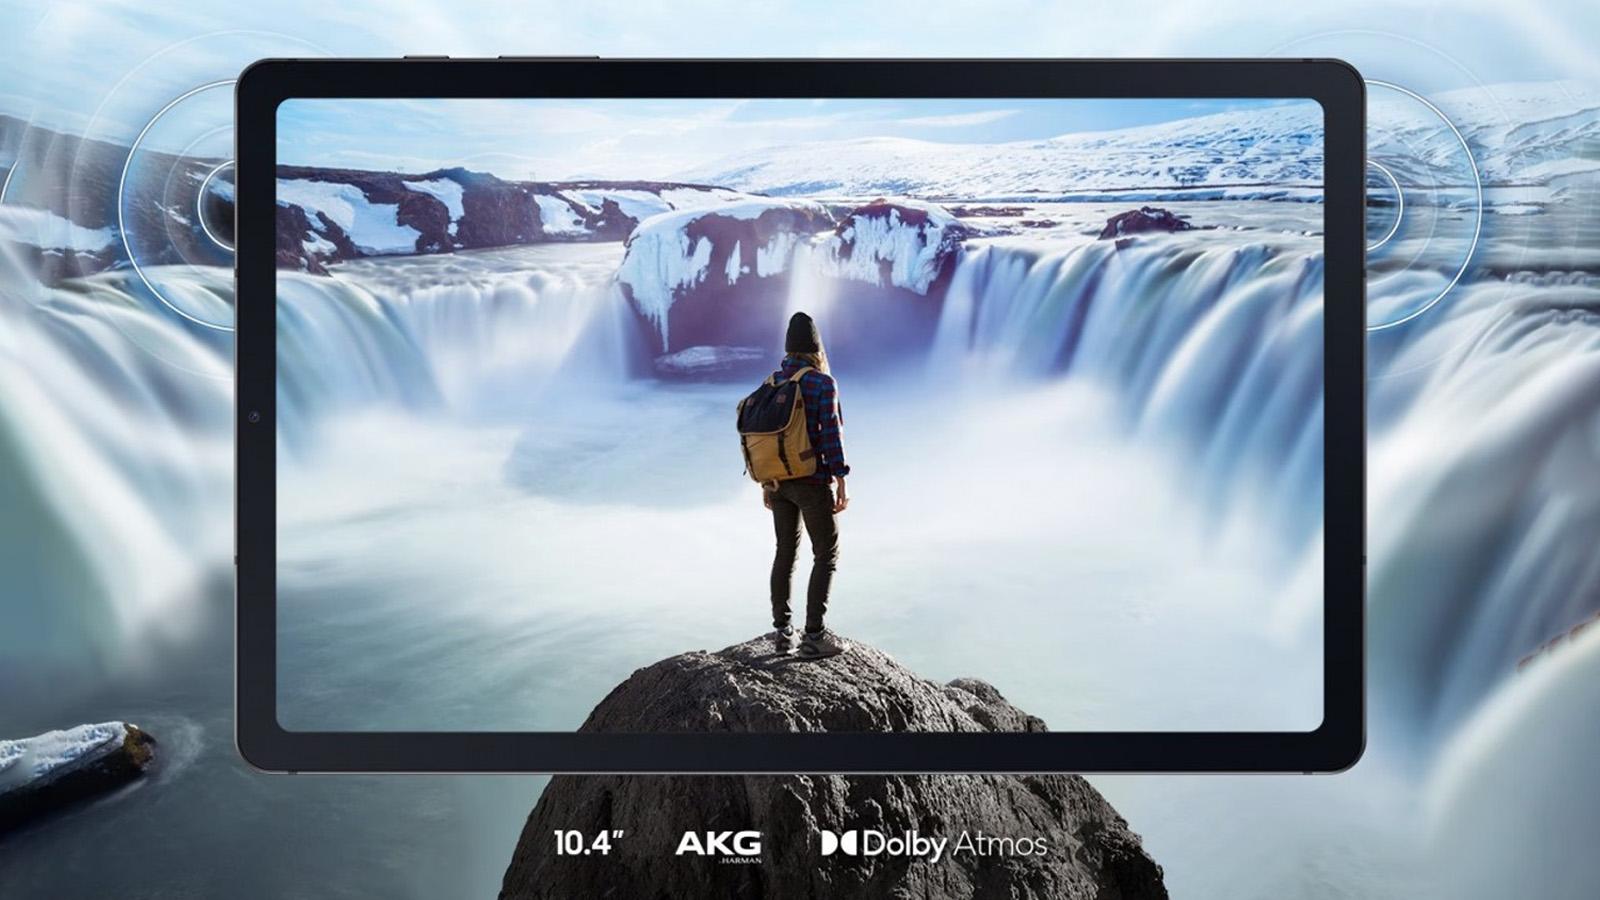 Galaxy Tab S6 Lite sở hữu màn hình TFT LCD rộng 10,4 inch mang lại độ phân giải sắc nét 2000 x 1200 pixels (Ảnh: Internet)